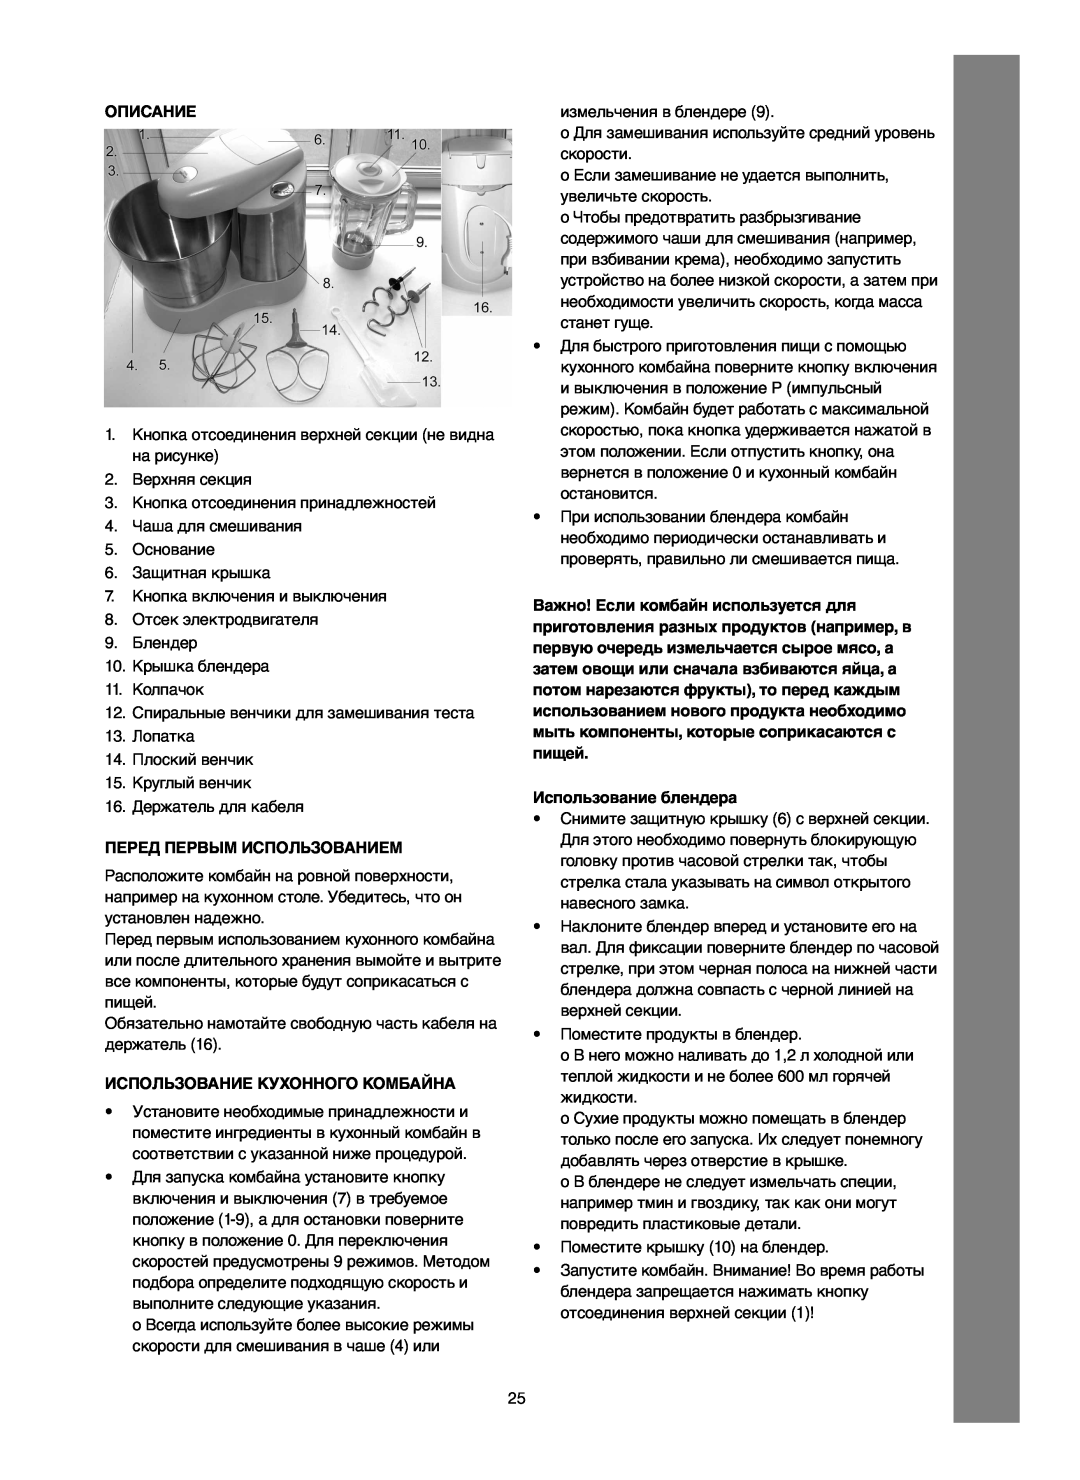 Melissa 246-016 manual Описание, Перед Первым Использованием, Использование Кухонного Комбайна, Использование блендера 